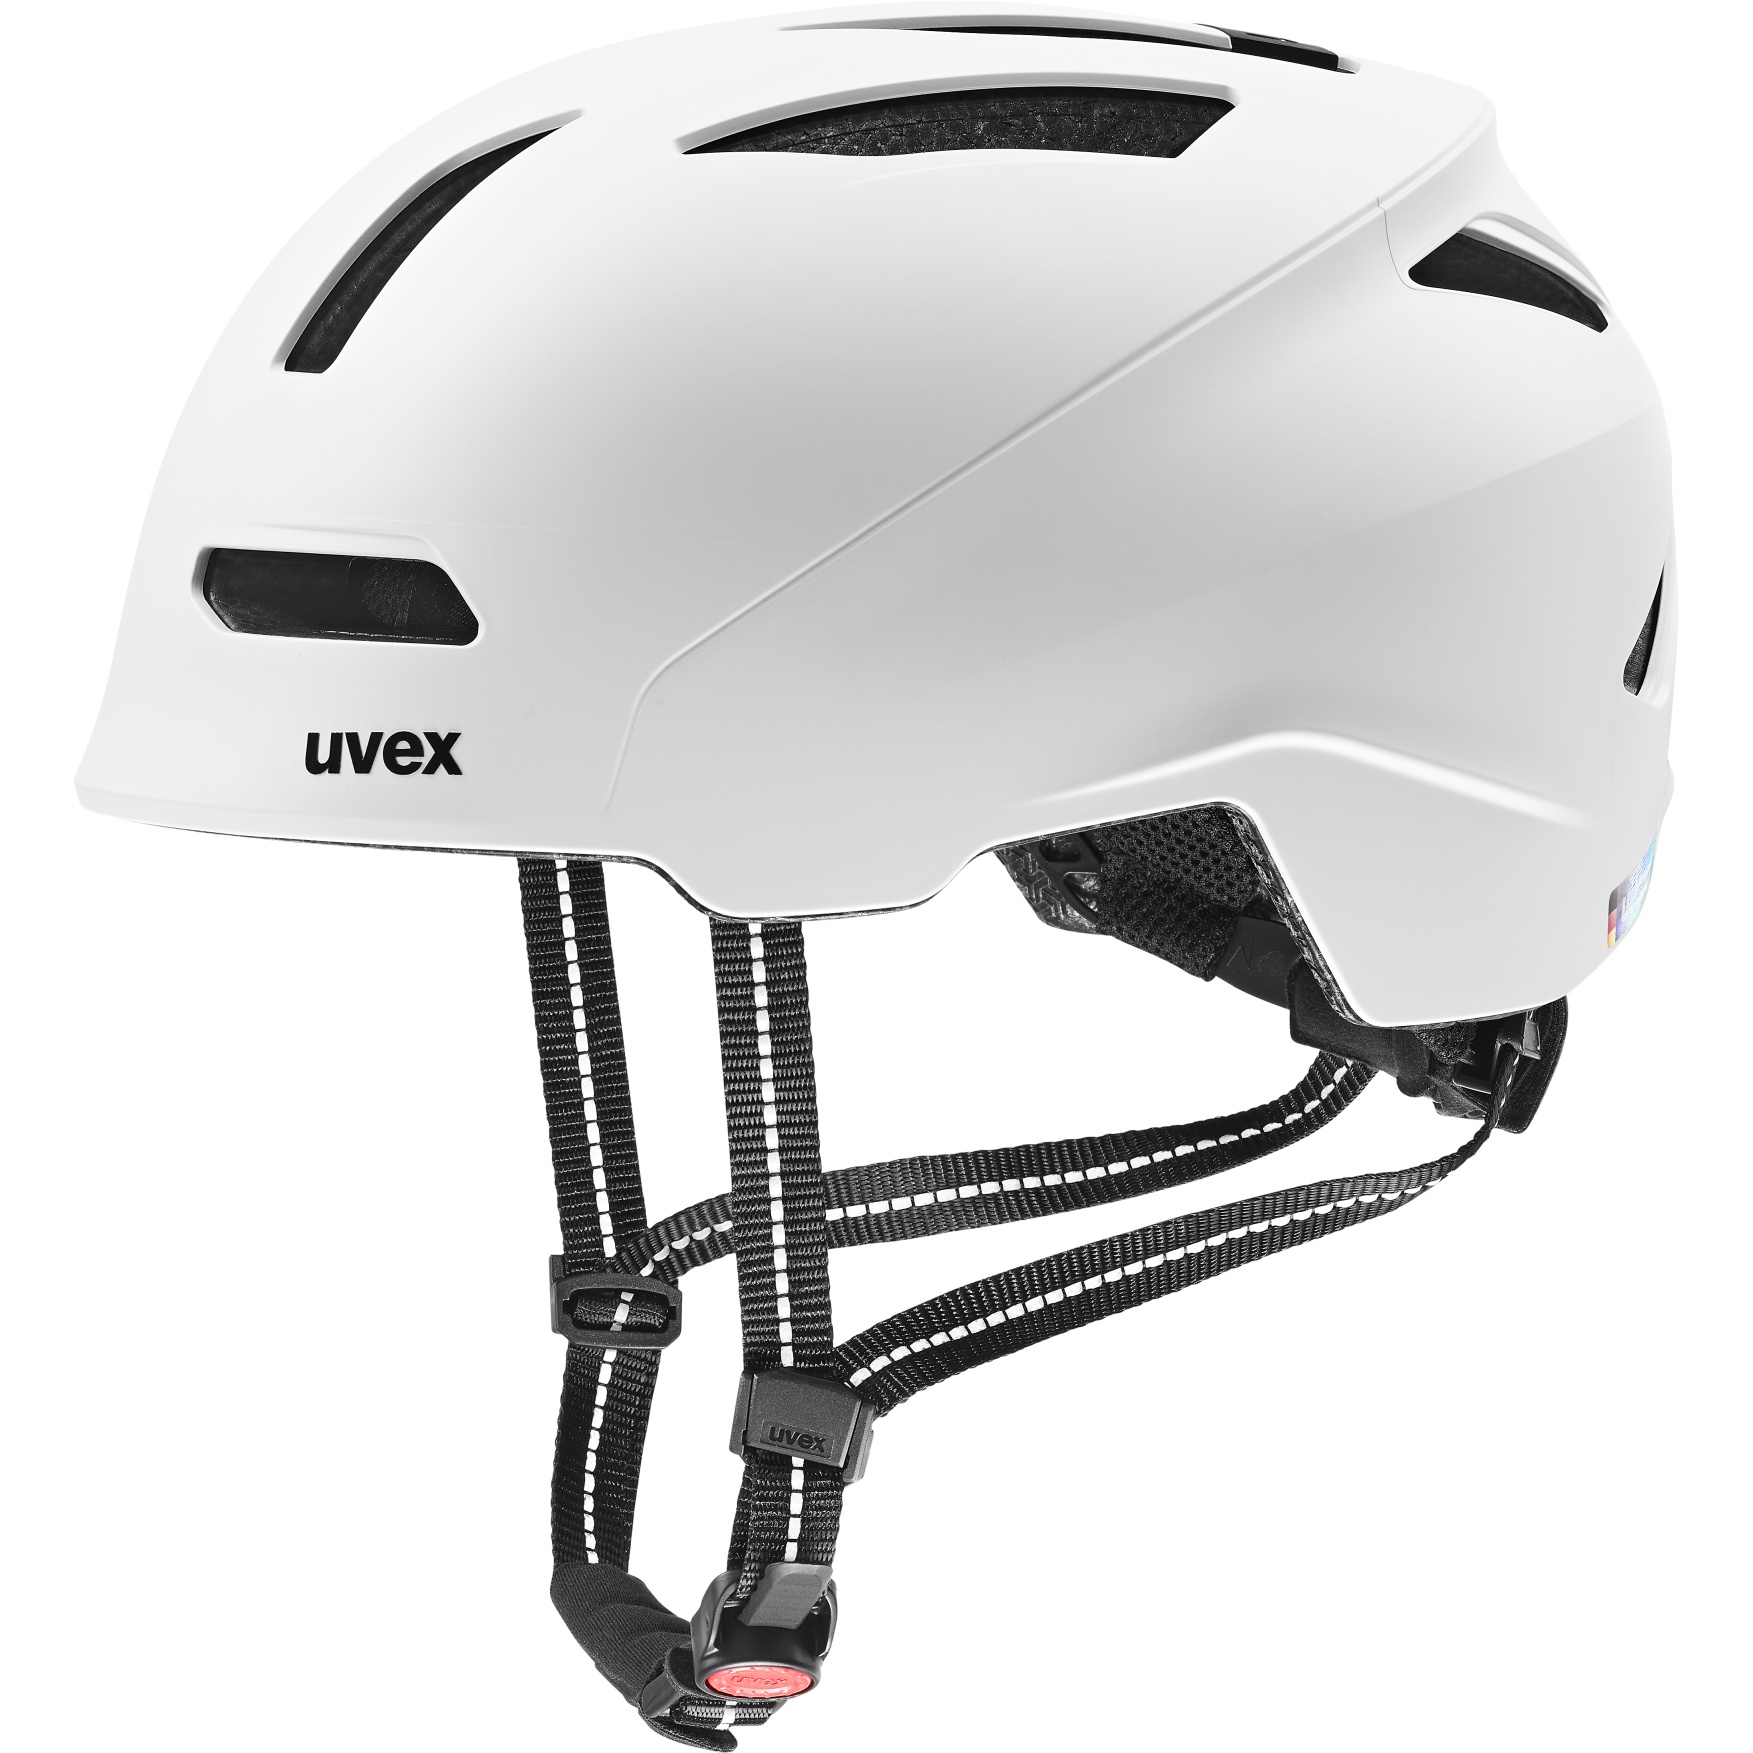 Produktbild von Uvex urban planet Helm - white matt